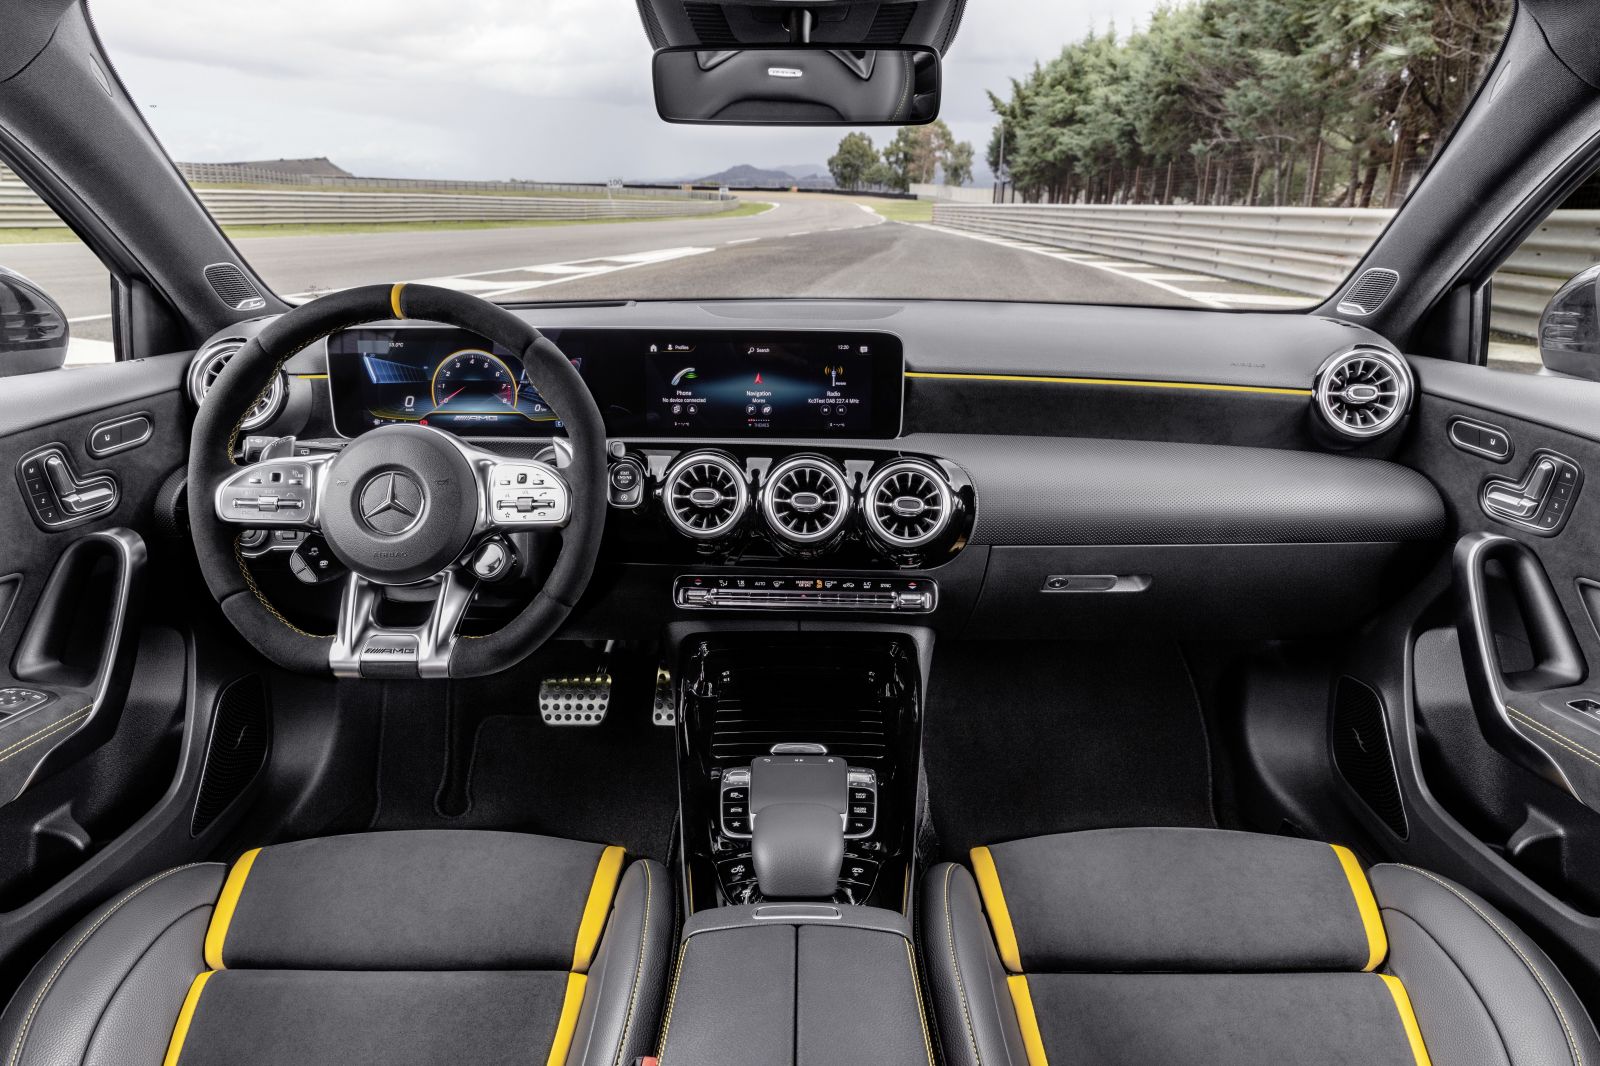 Mercedes-AMG odhalil superšporty medzi kompaktmi. 45-kové novinky majú násilnejší dvojliter na svete